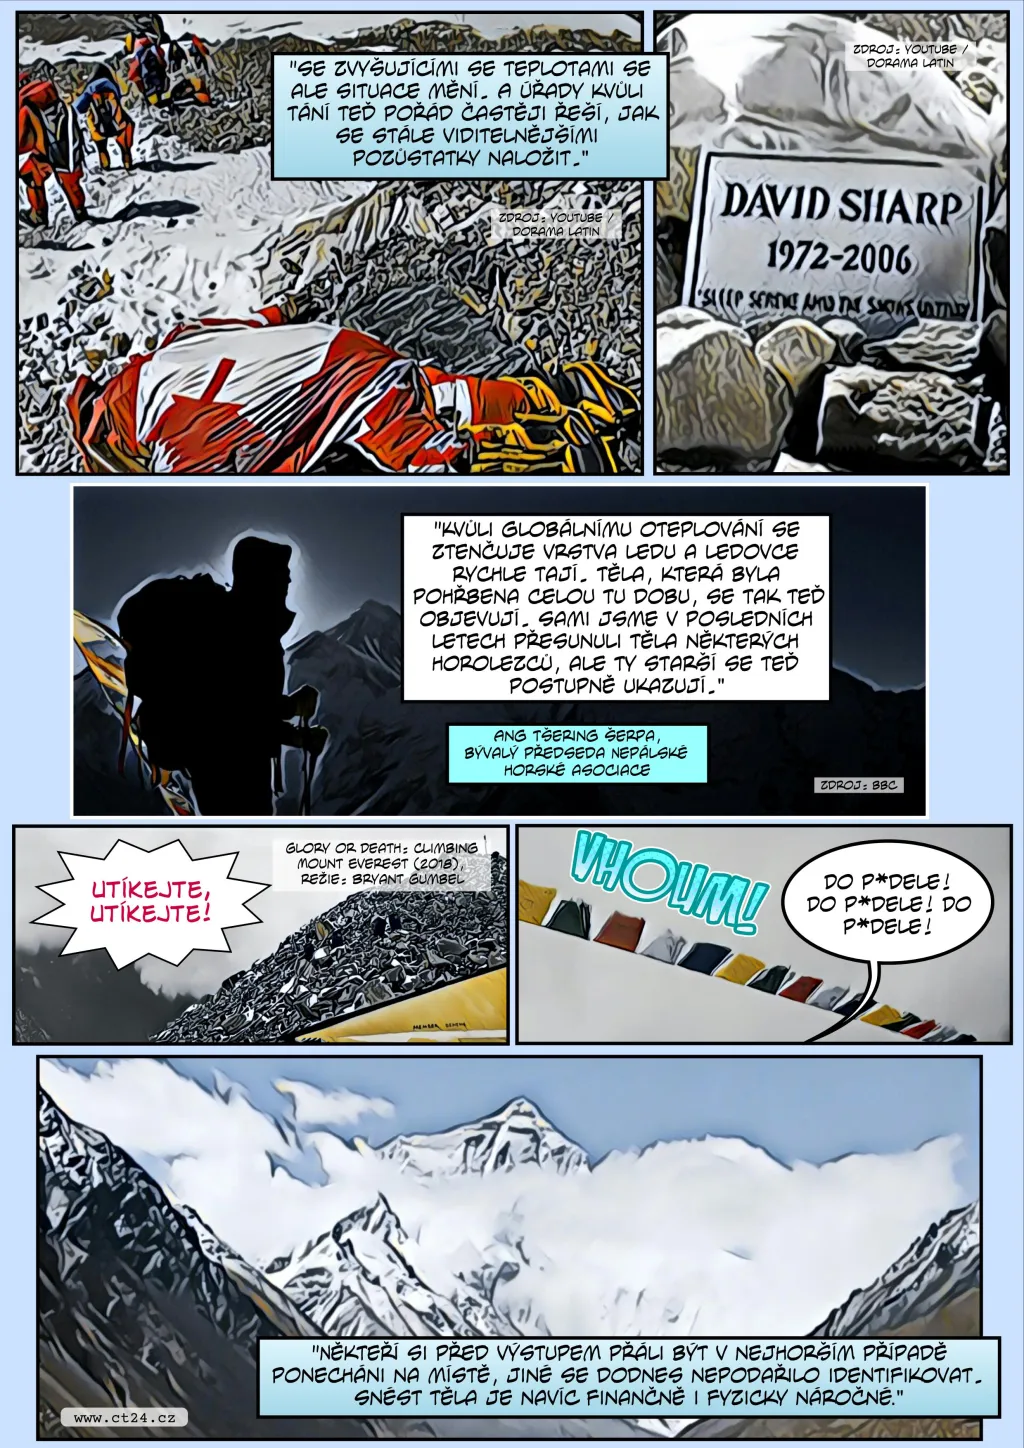 Komiks: Tající ledovce odkrývají těla horolezců